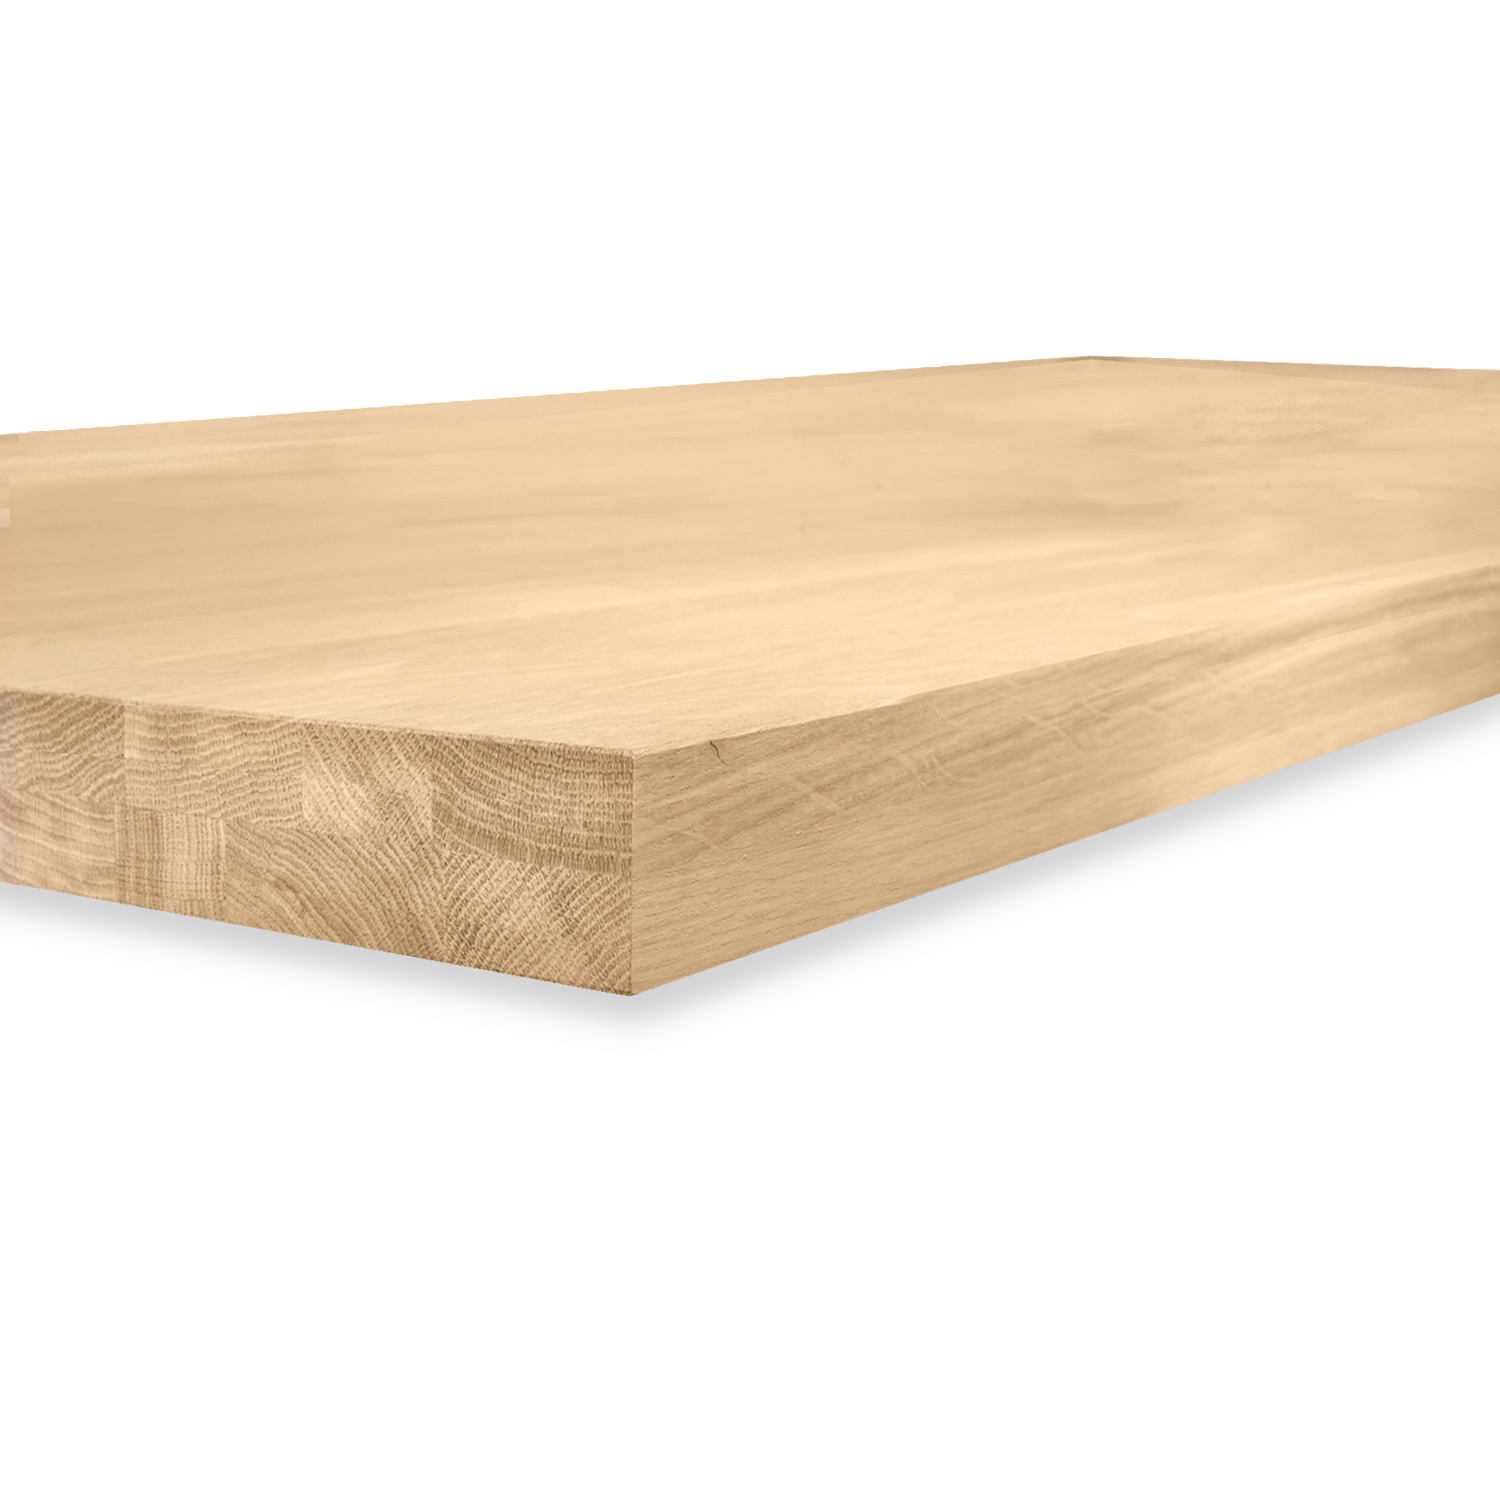  Eiken tafelblad op maat - OPGEDIKT - 4 cm dik (2-laags rondom) - foutvrij Europees eikenhout - verlijmd kd 8-12% - 50-120x50-300 cm